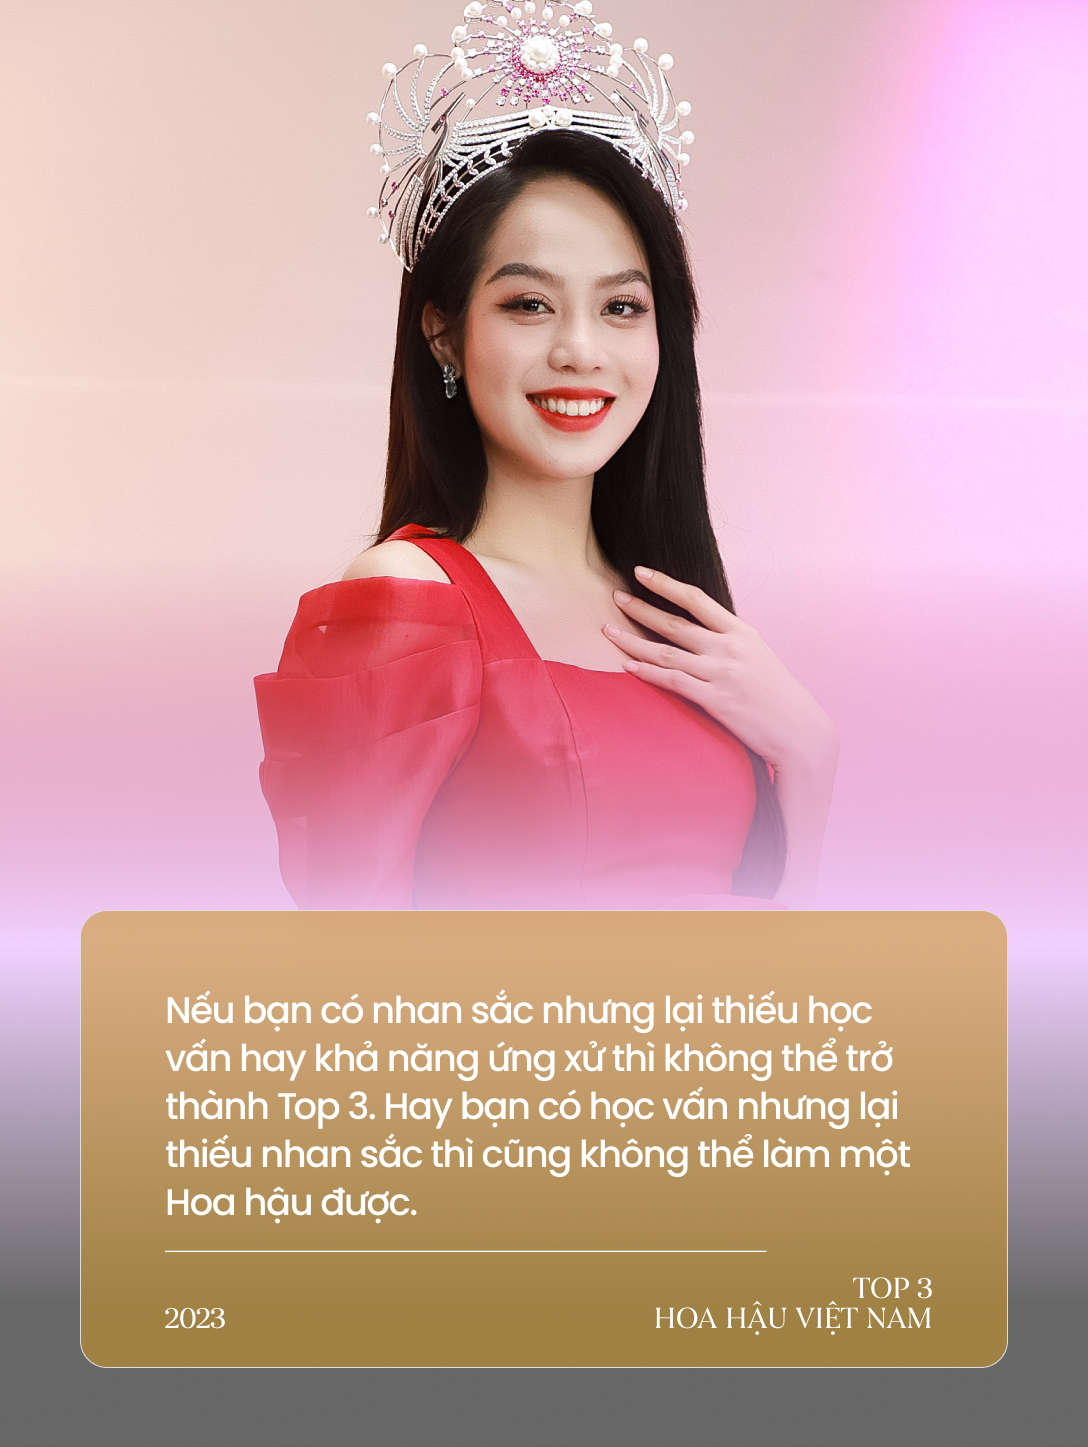 Gặp Top 3 Hoa hậu Việt Nam ngày cận Tết: Hoa hậu không chỉ cần mỗi nhan sắc; Không ai có quyền can thiệp quyết định tiến vào showbiz - Ảnh 4.